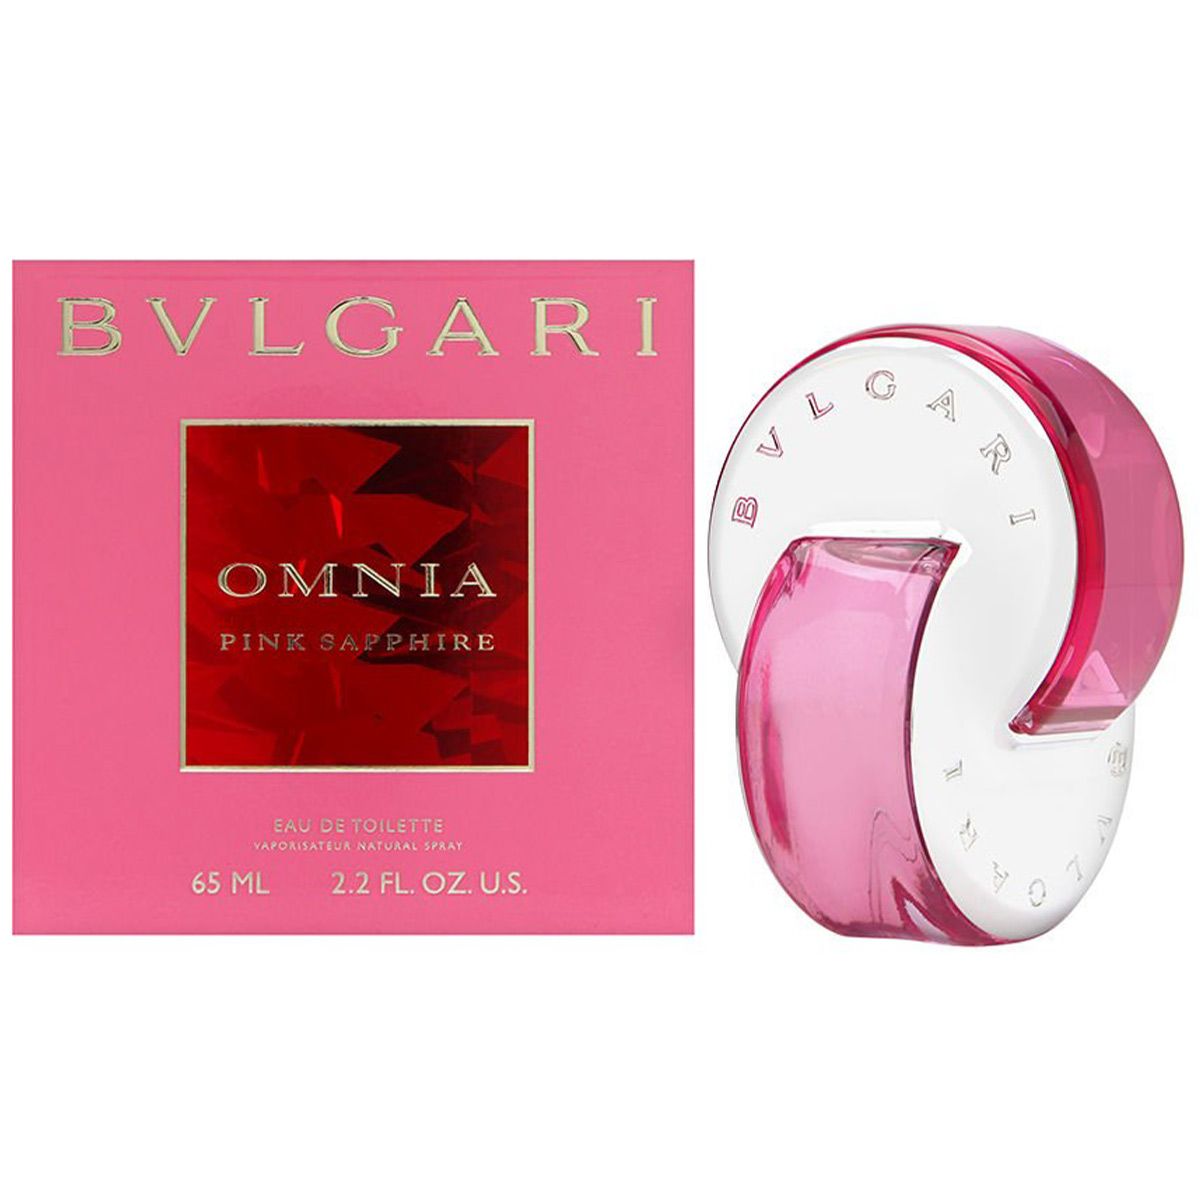  Bvlgari Omnia Pink Sapphire For Women 